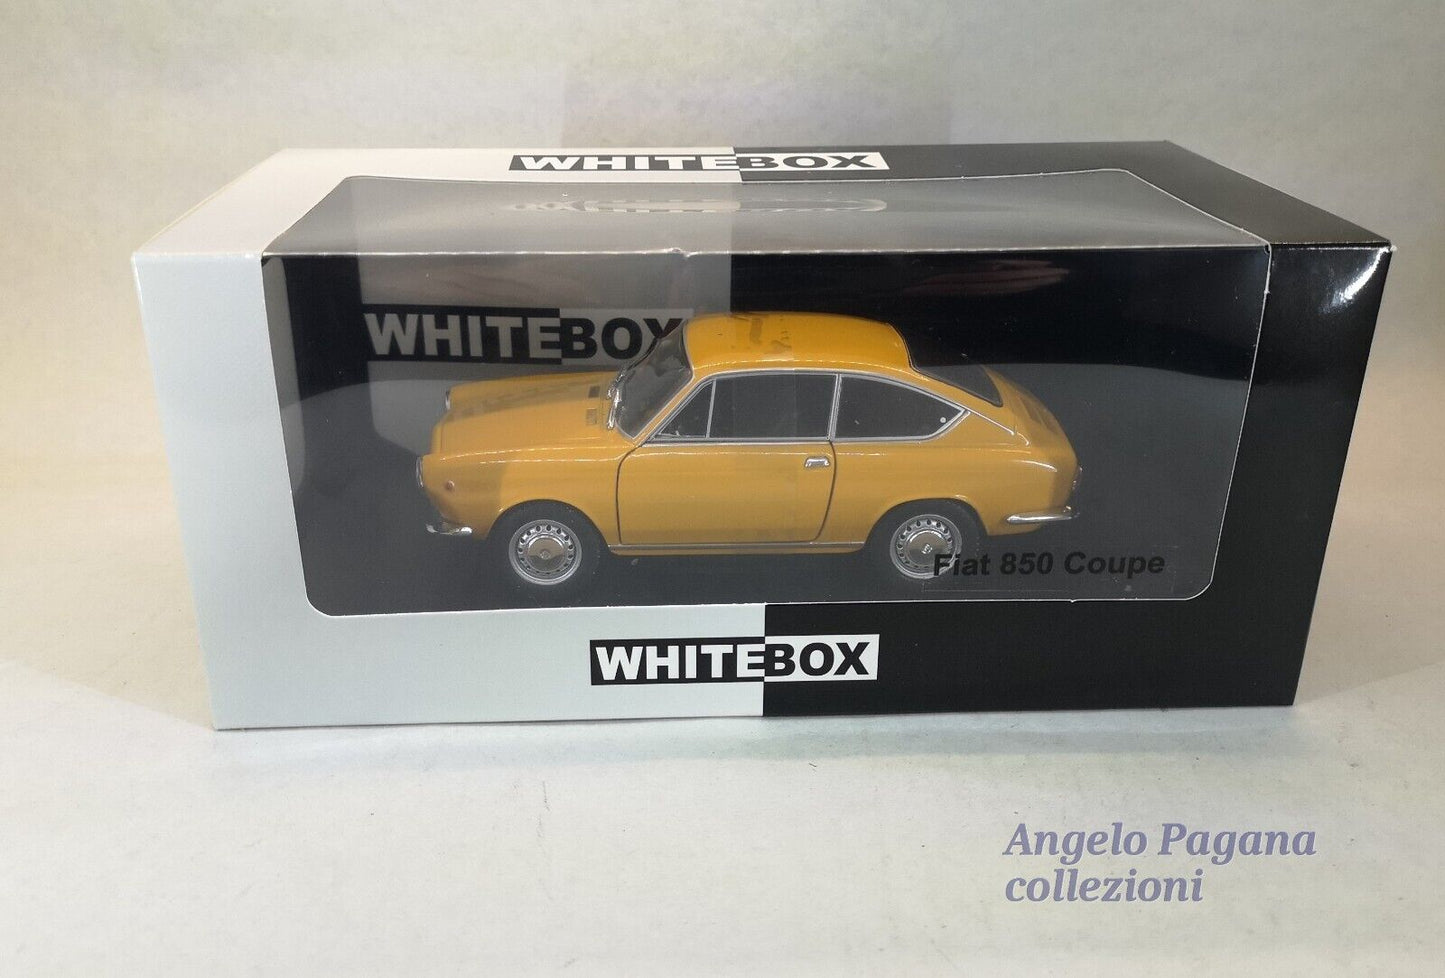 modellino auto 1/24 fiat 850 coupe macchine vintage die cast della whitebox